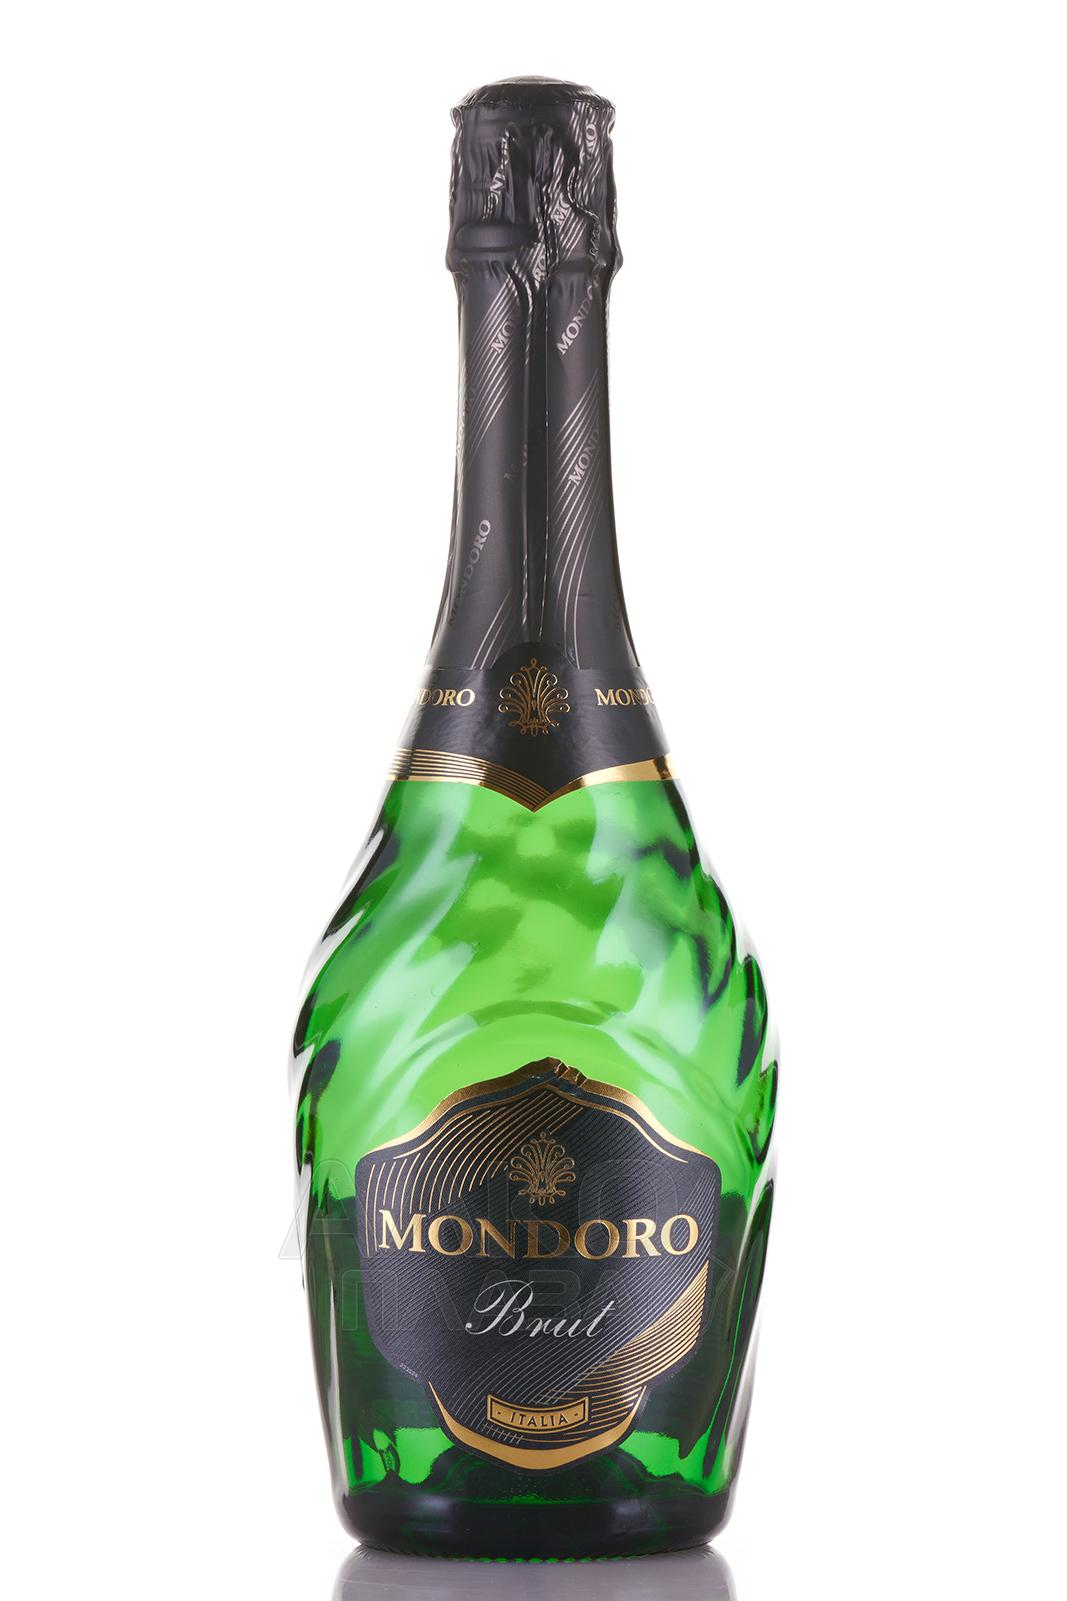 Шампанское мондоро отзывы. Игристое вино Мондоро. Мондоро брют. Вино игристое Мондоро брют бел.брют. Вино игристое Мондоро бел Брю.